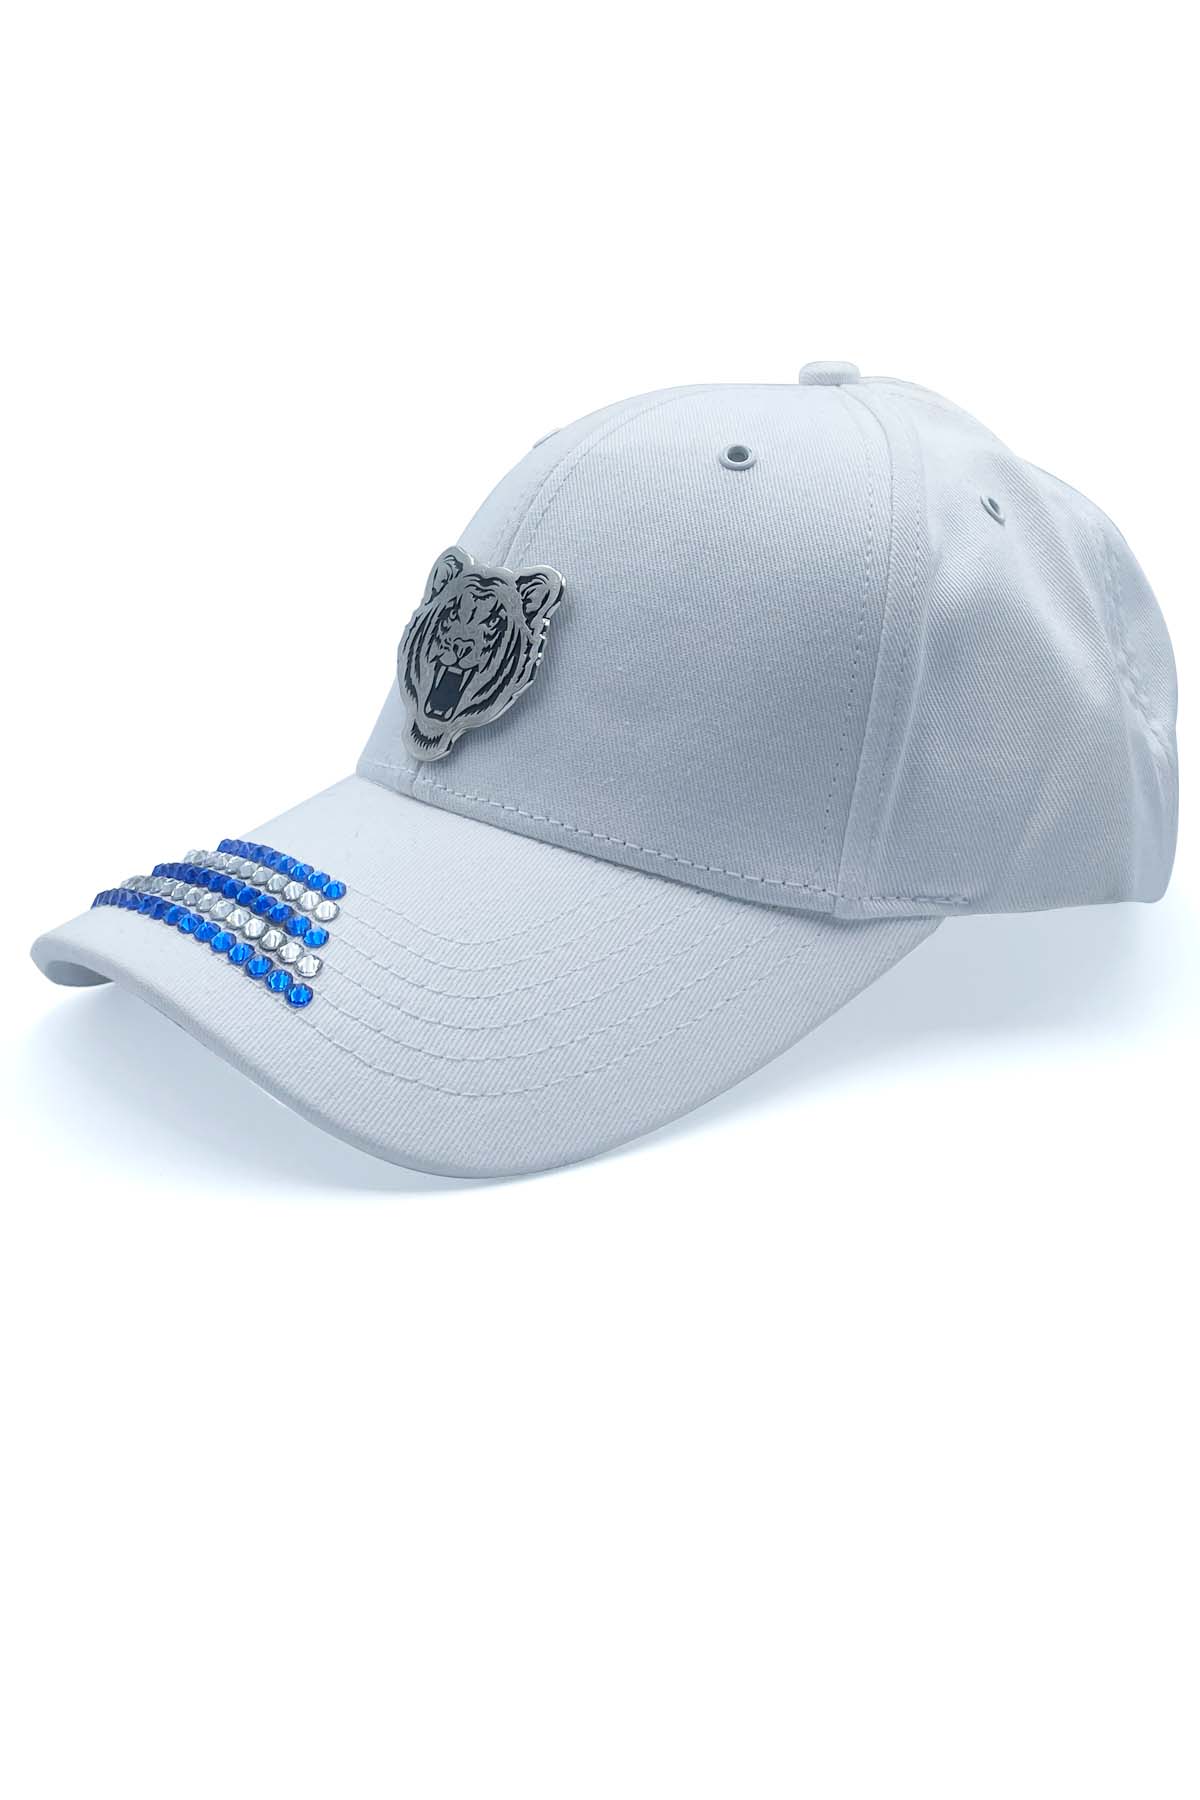 White cap with blue swarovski stones